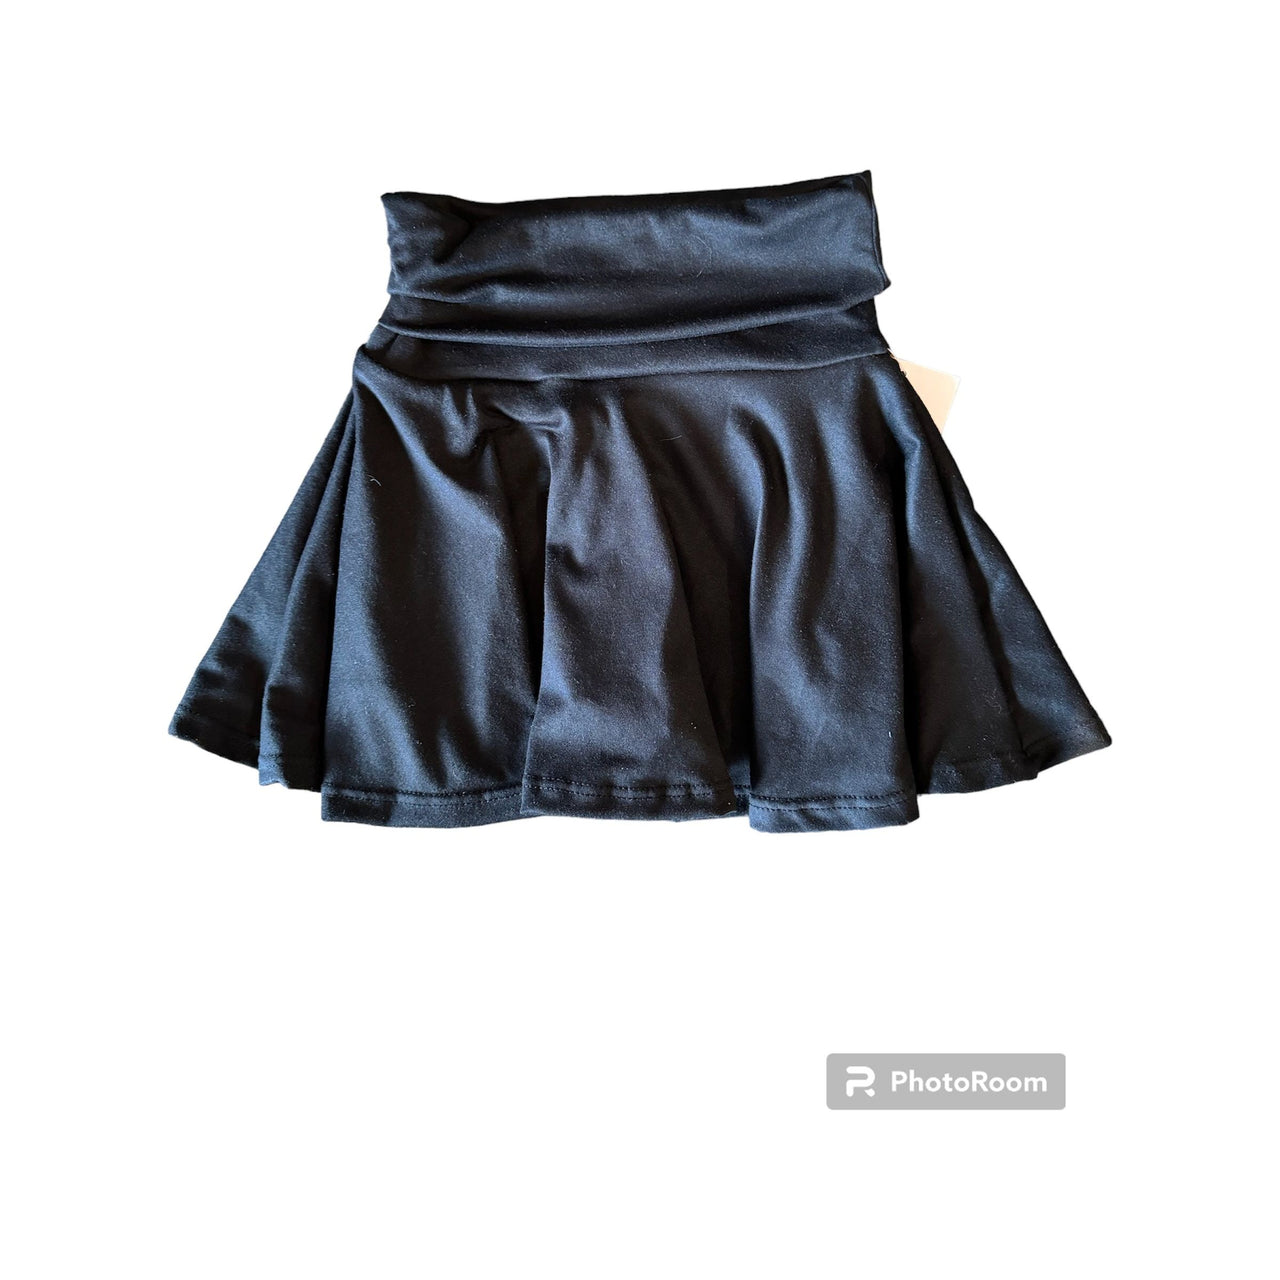 black foldover skirt